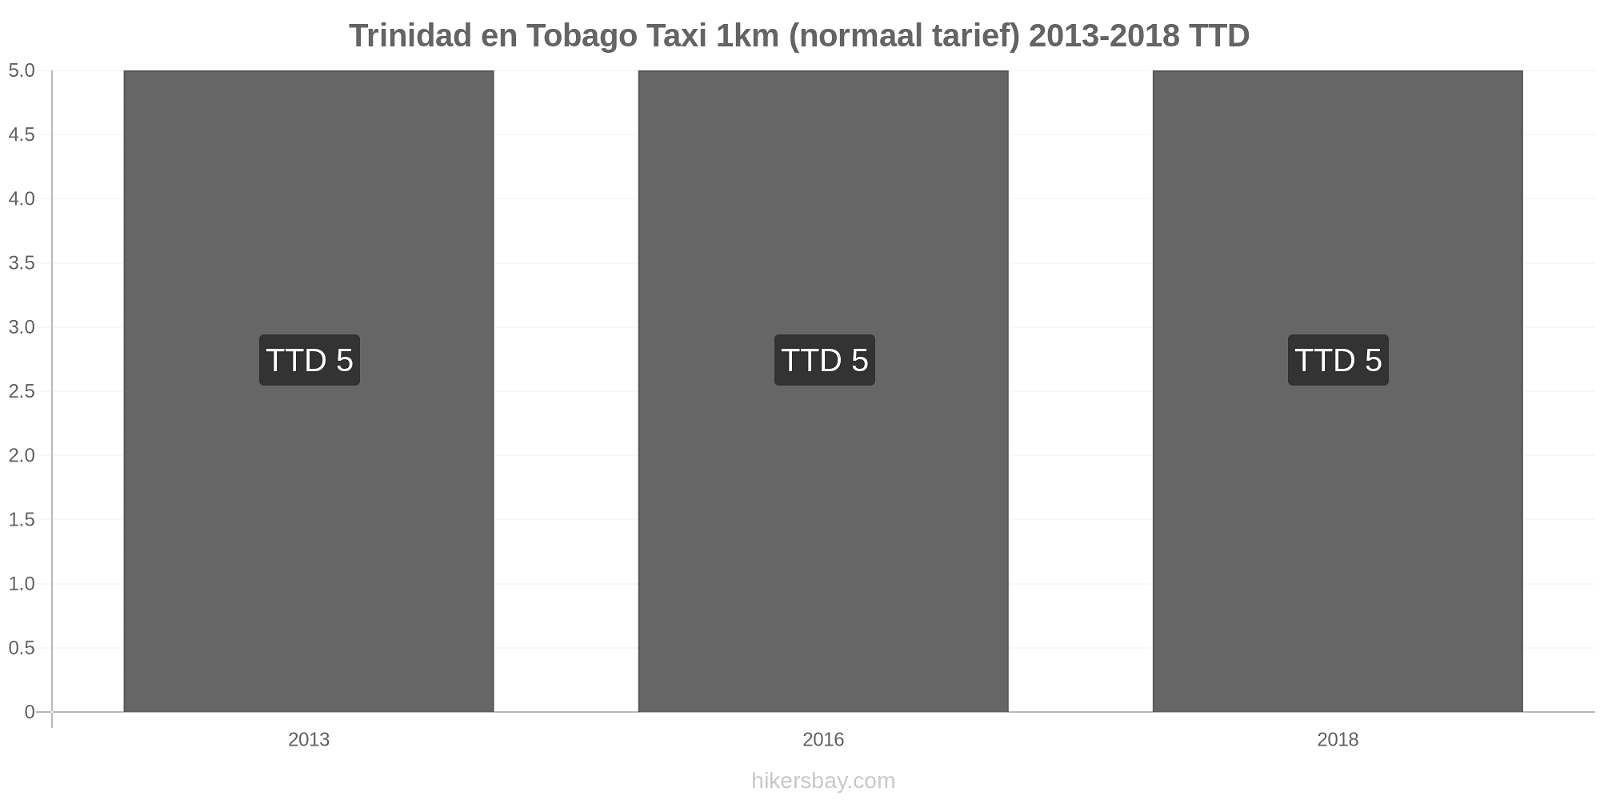 Trinidad en Tobago prijswijzigingen Taxi 1km (normaal tarief) hikersbay.com